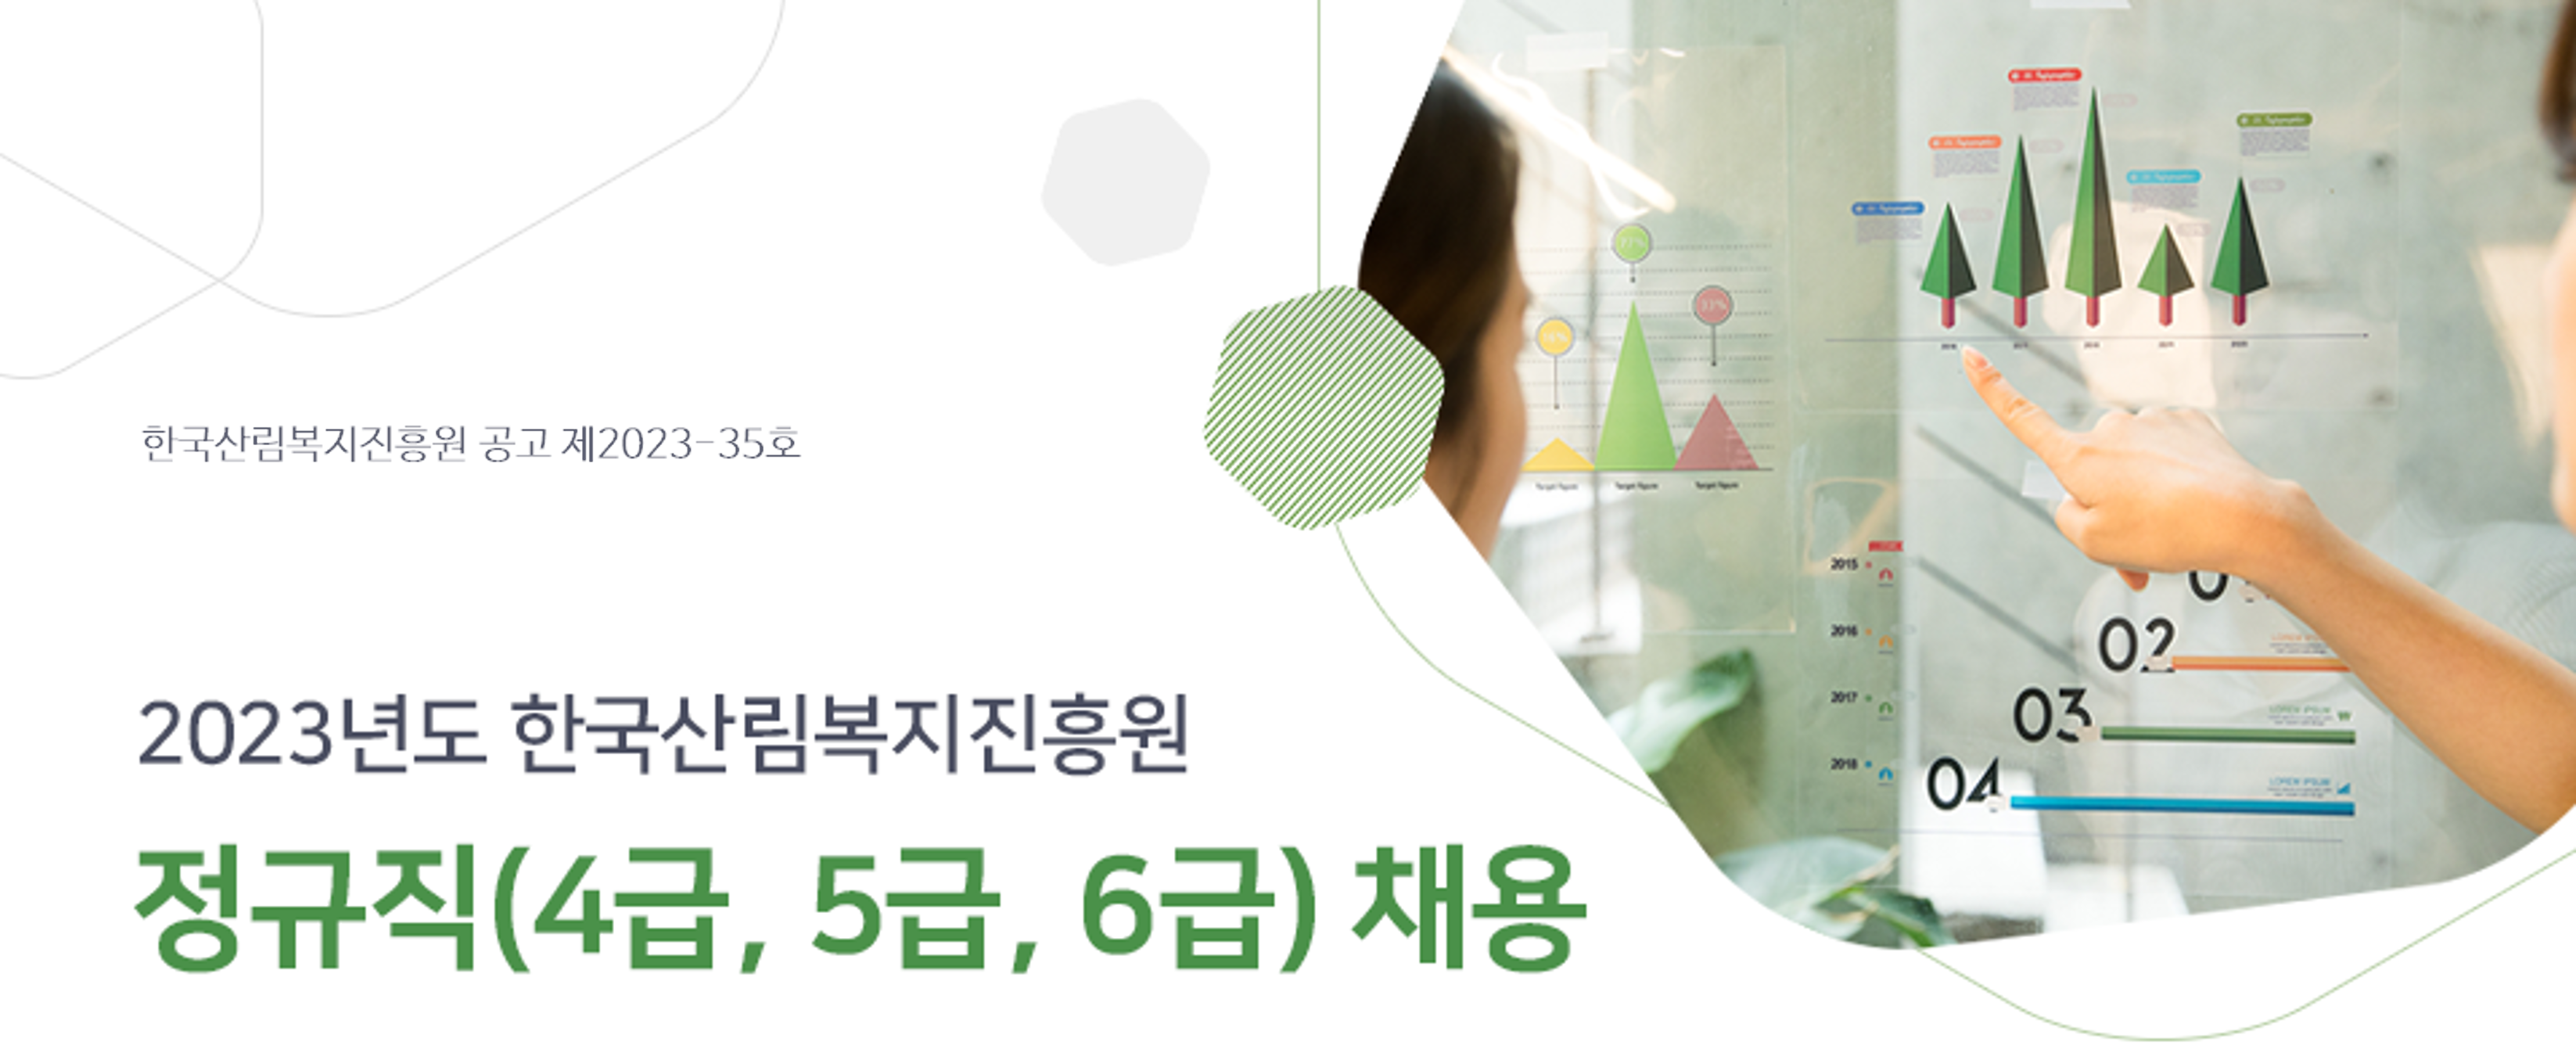 한국산림복지진흥원 2023년도 한국산림복지진흥원 정규직(4급, 5급, 6급) 채용